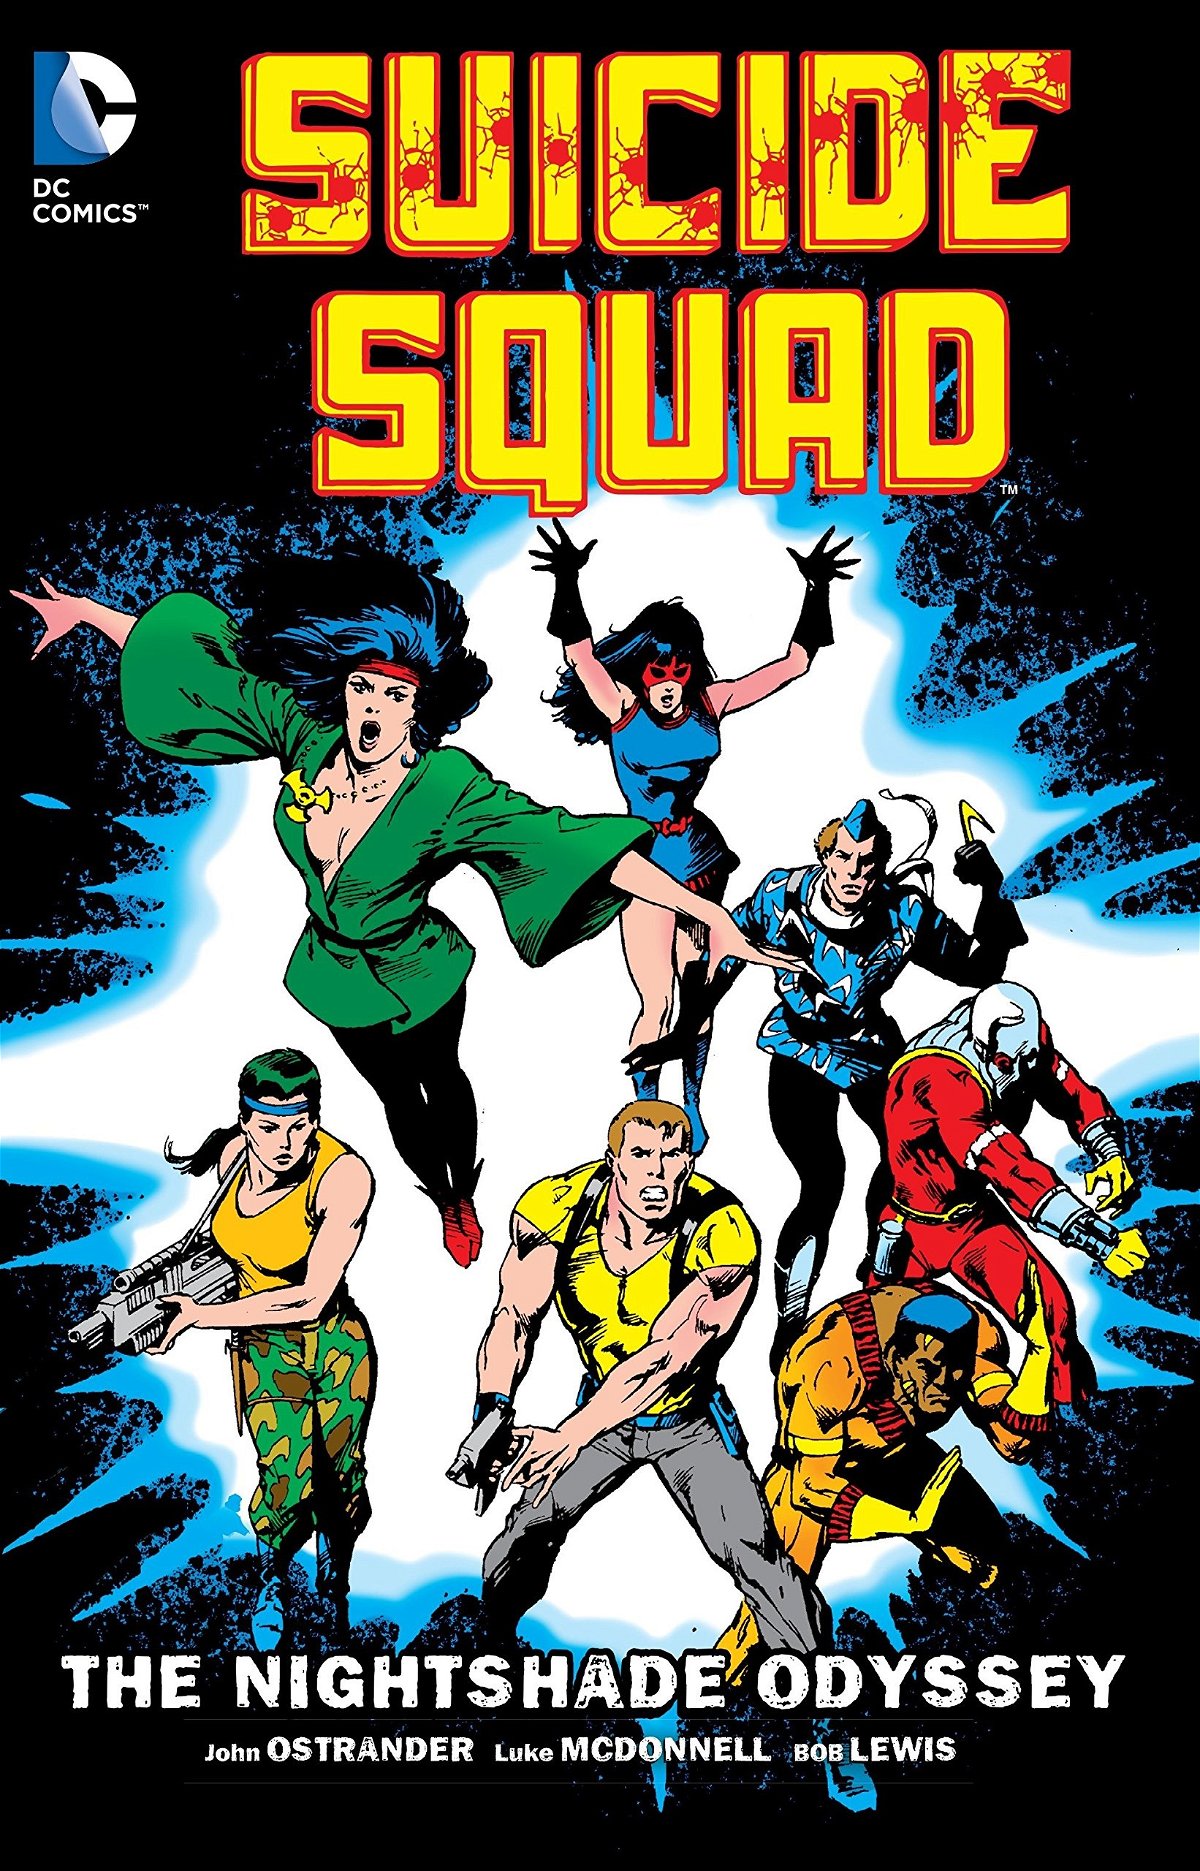 Il secondo volume USA della Suicide Squad di John Ostrander